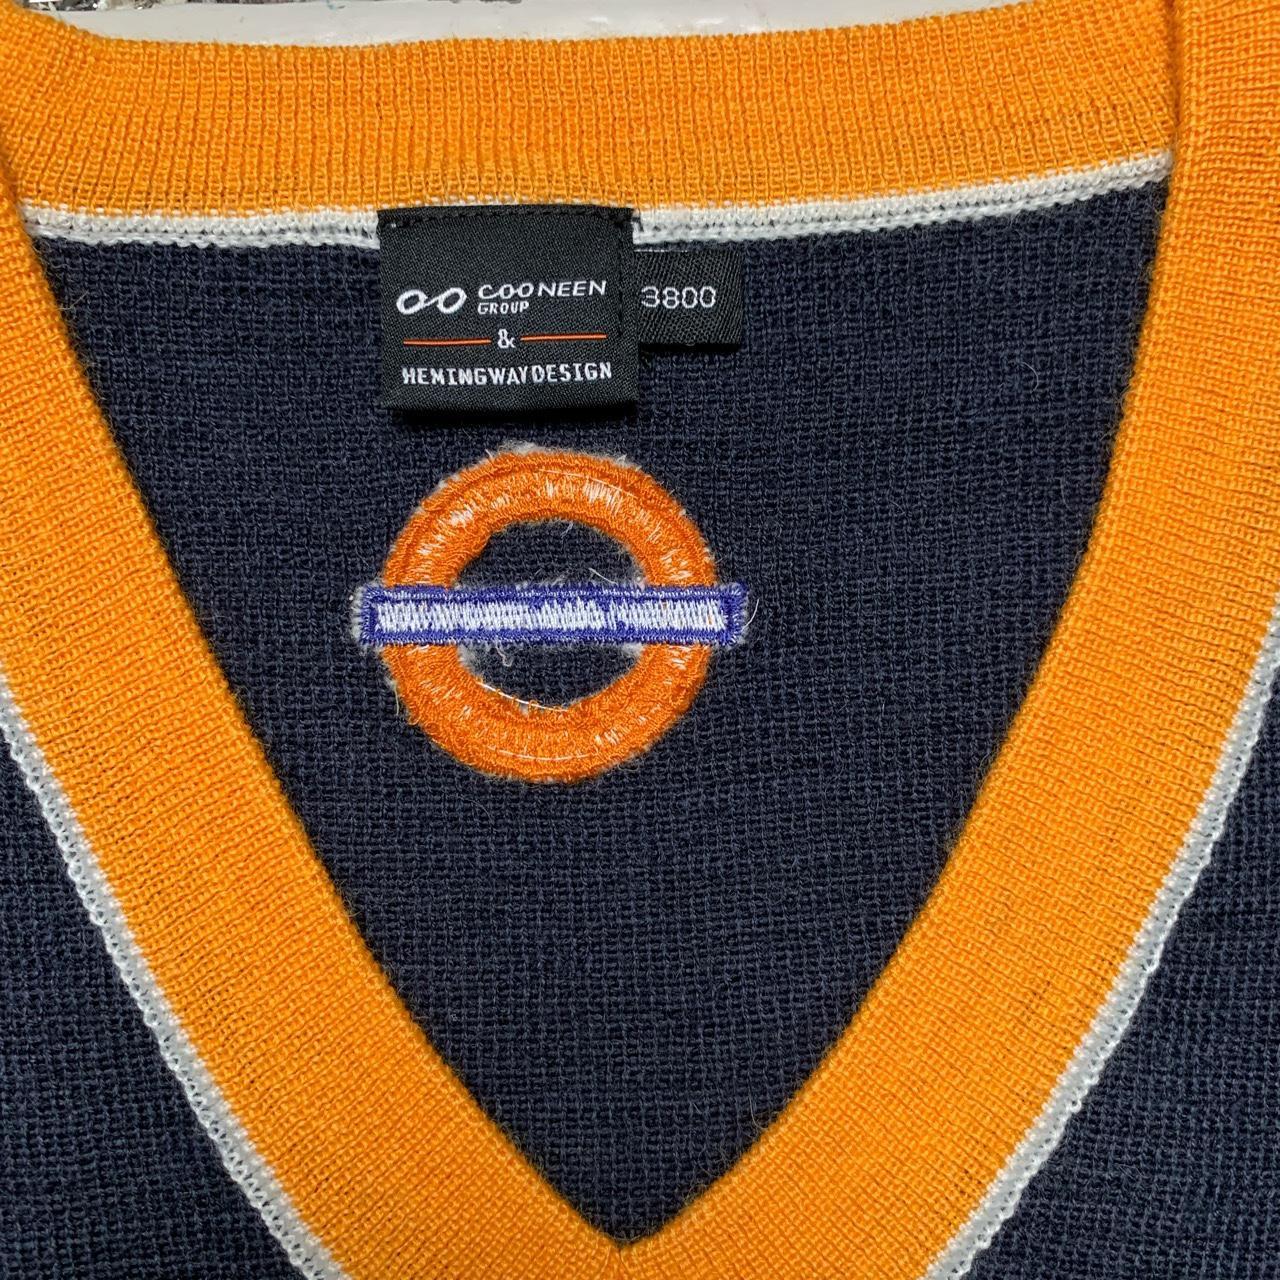 London Underground Overground Navy and Orange V Neck Jumper